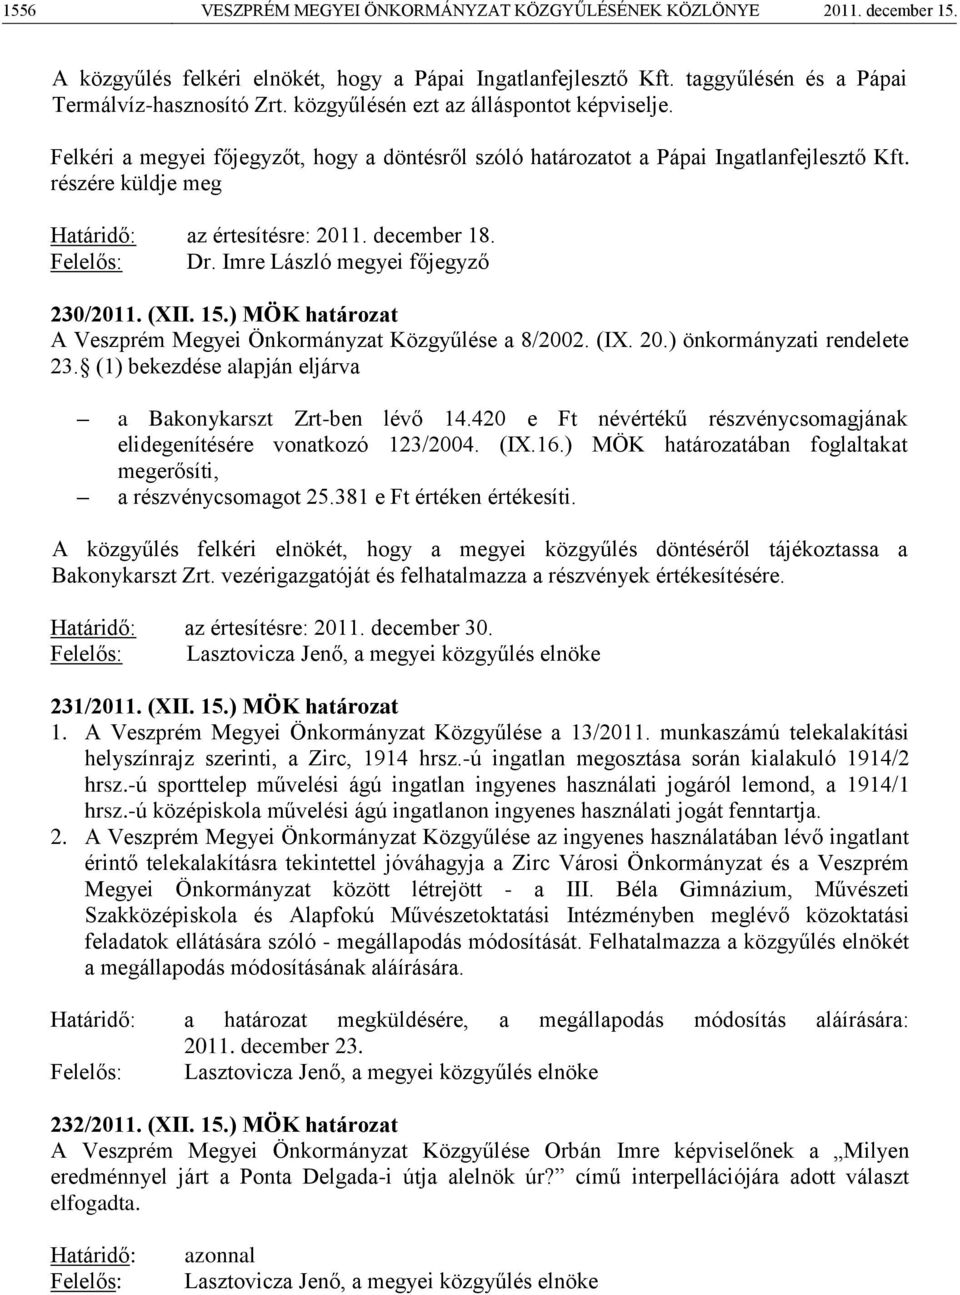 Felelős: Dr. Imre László megyei főjegyző 230/2011. (XII. 15.) MÖK határozat A Veszprém Megyei Önkormányzat Közgyűlése a 8/2002. (IX. 20.) önkormányzati rendelete 23.